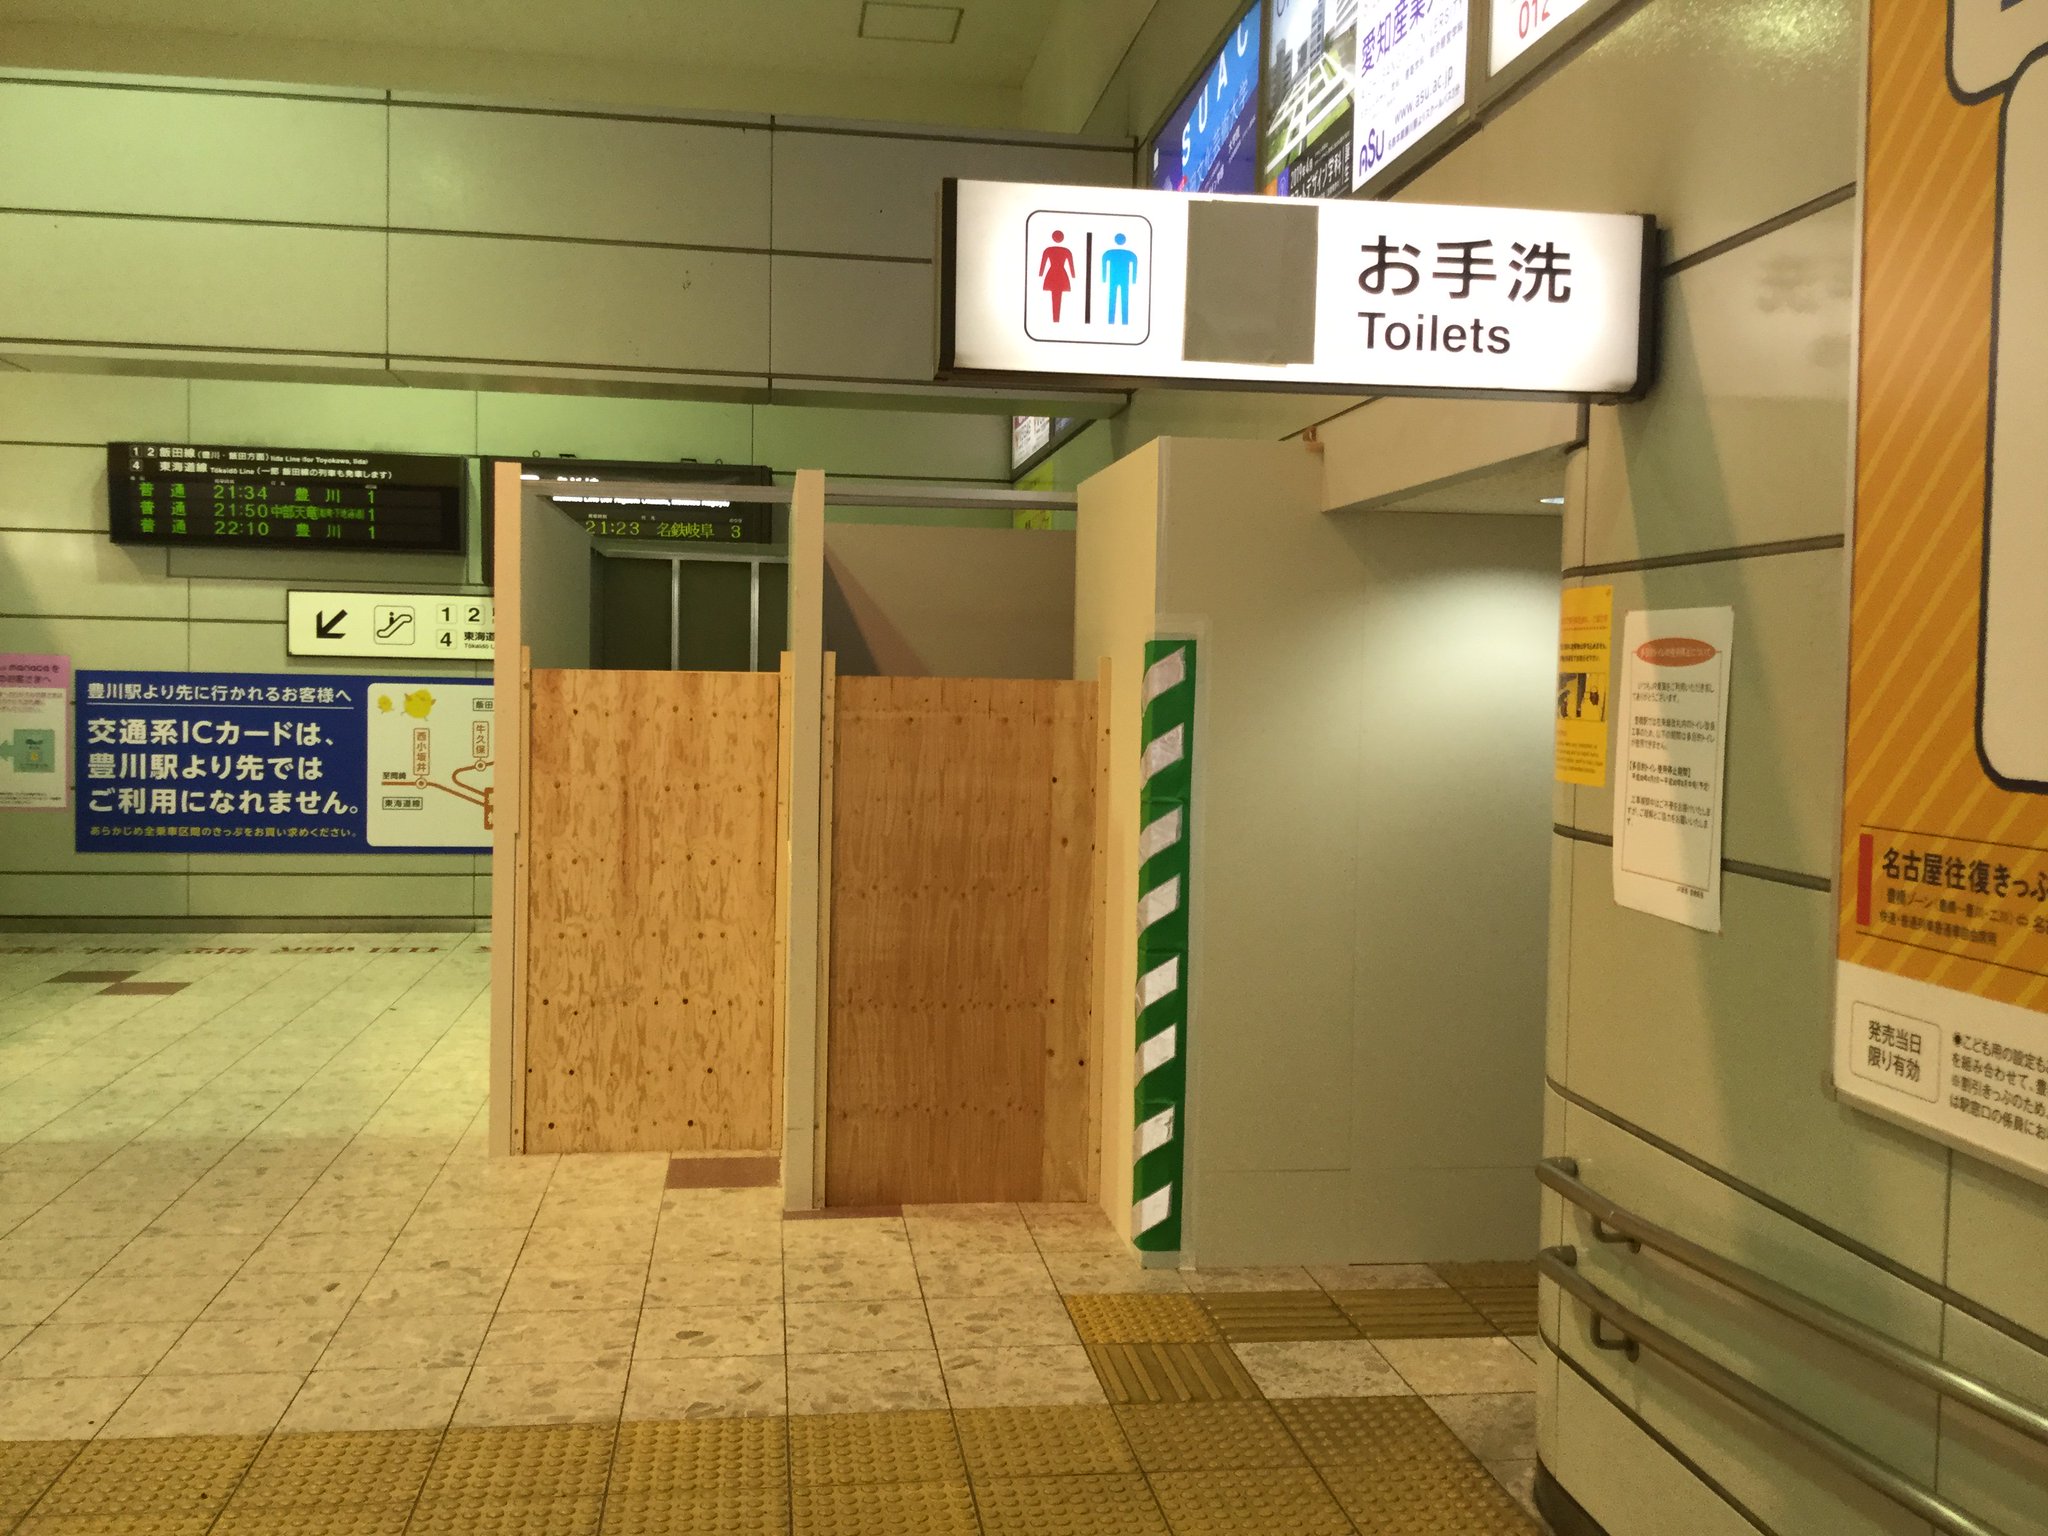 敦轢(あつれき)の人 on Twitter "豊橋駅は在来線改札内のトイレが改修されるけど、現在仮設トイレの工事が